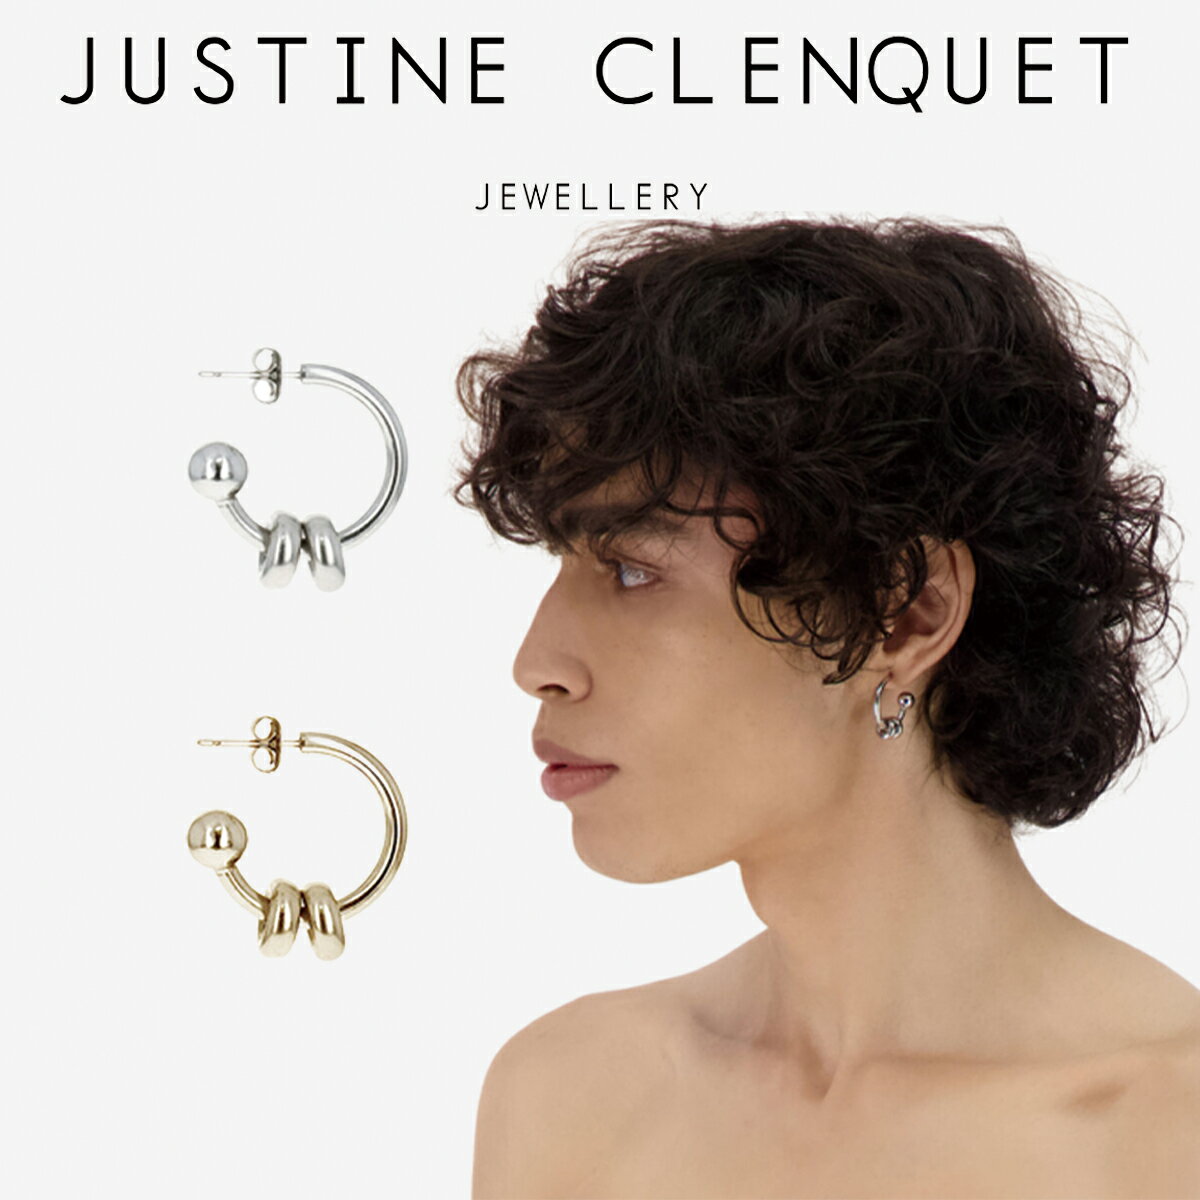 ジュスティーヌクランケ ピアス Justine Clenquet アラン ピアス シングル Alan earrings シルバー レディース メンズ ユニセックス パラジウム